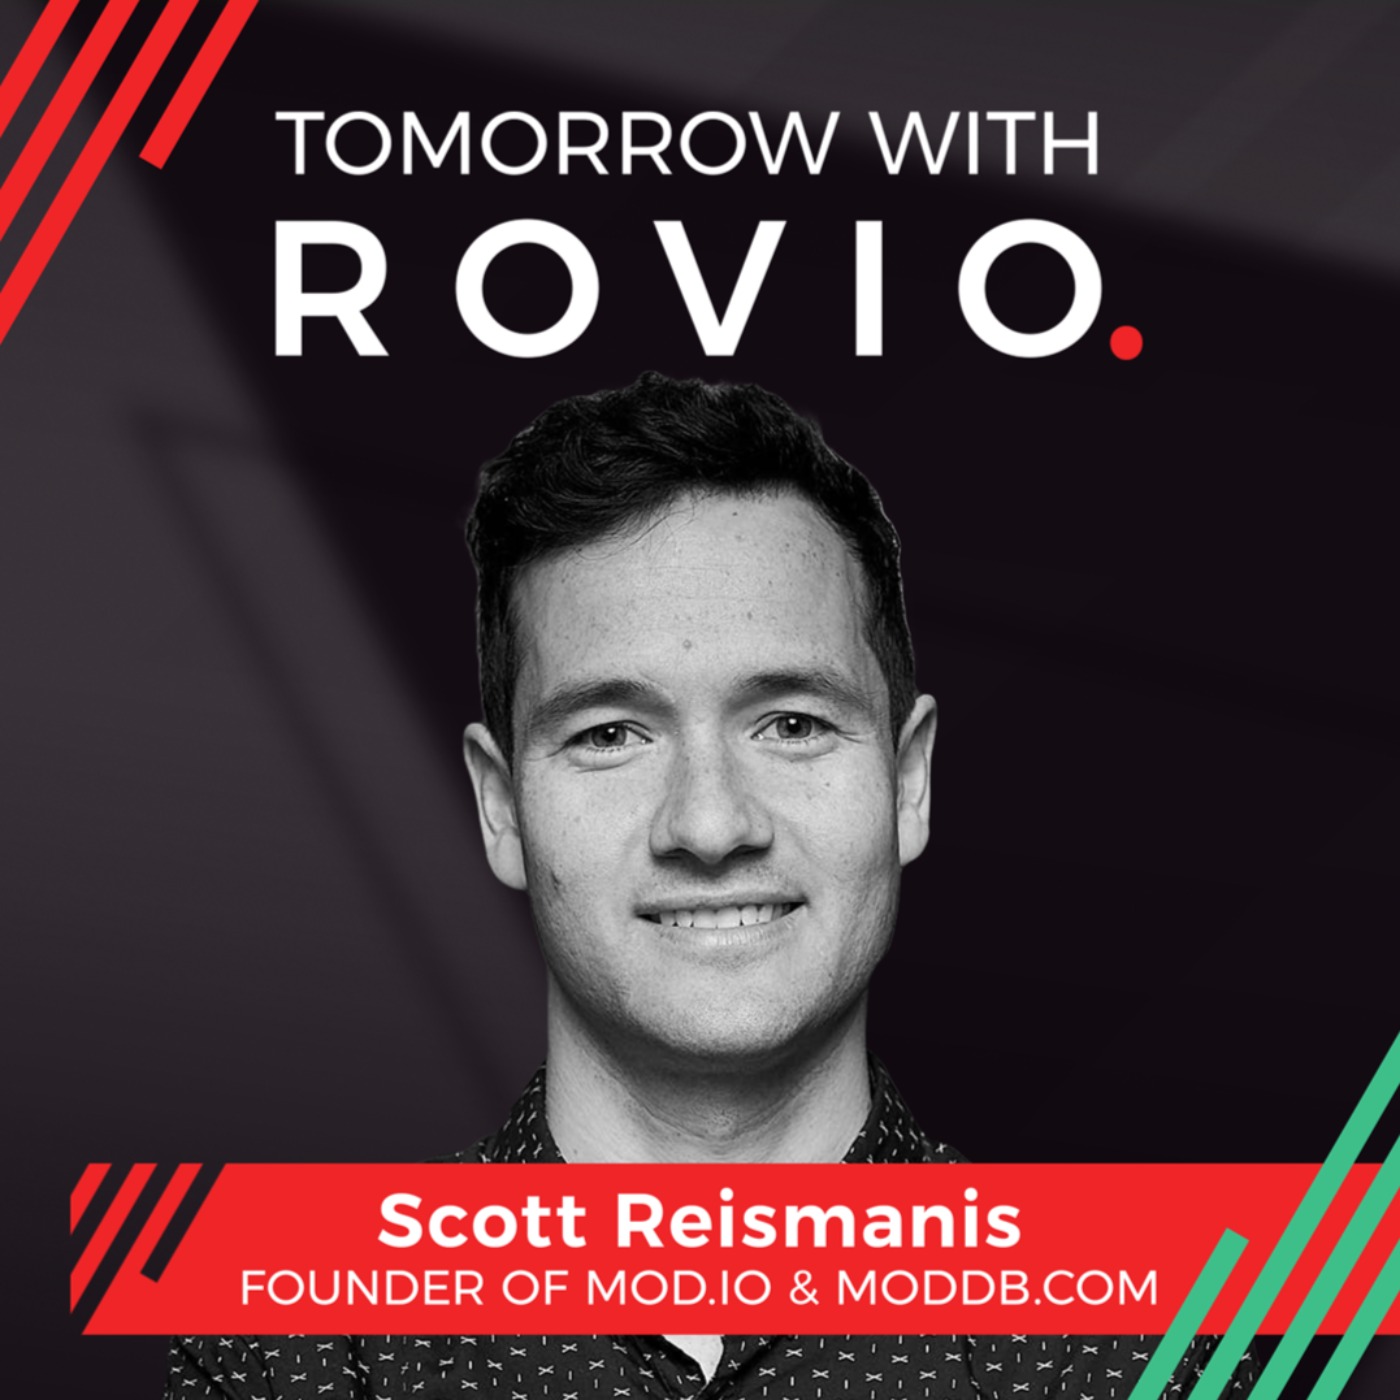 Scott Reismanis - Founder of mod.io & ModDB.com